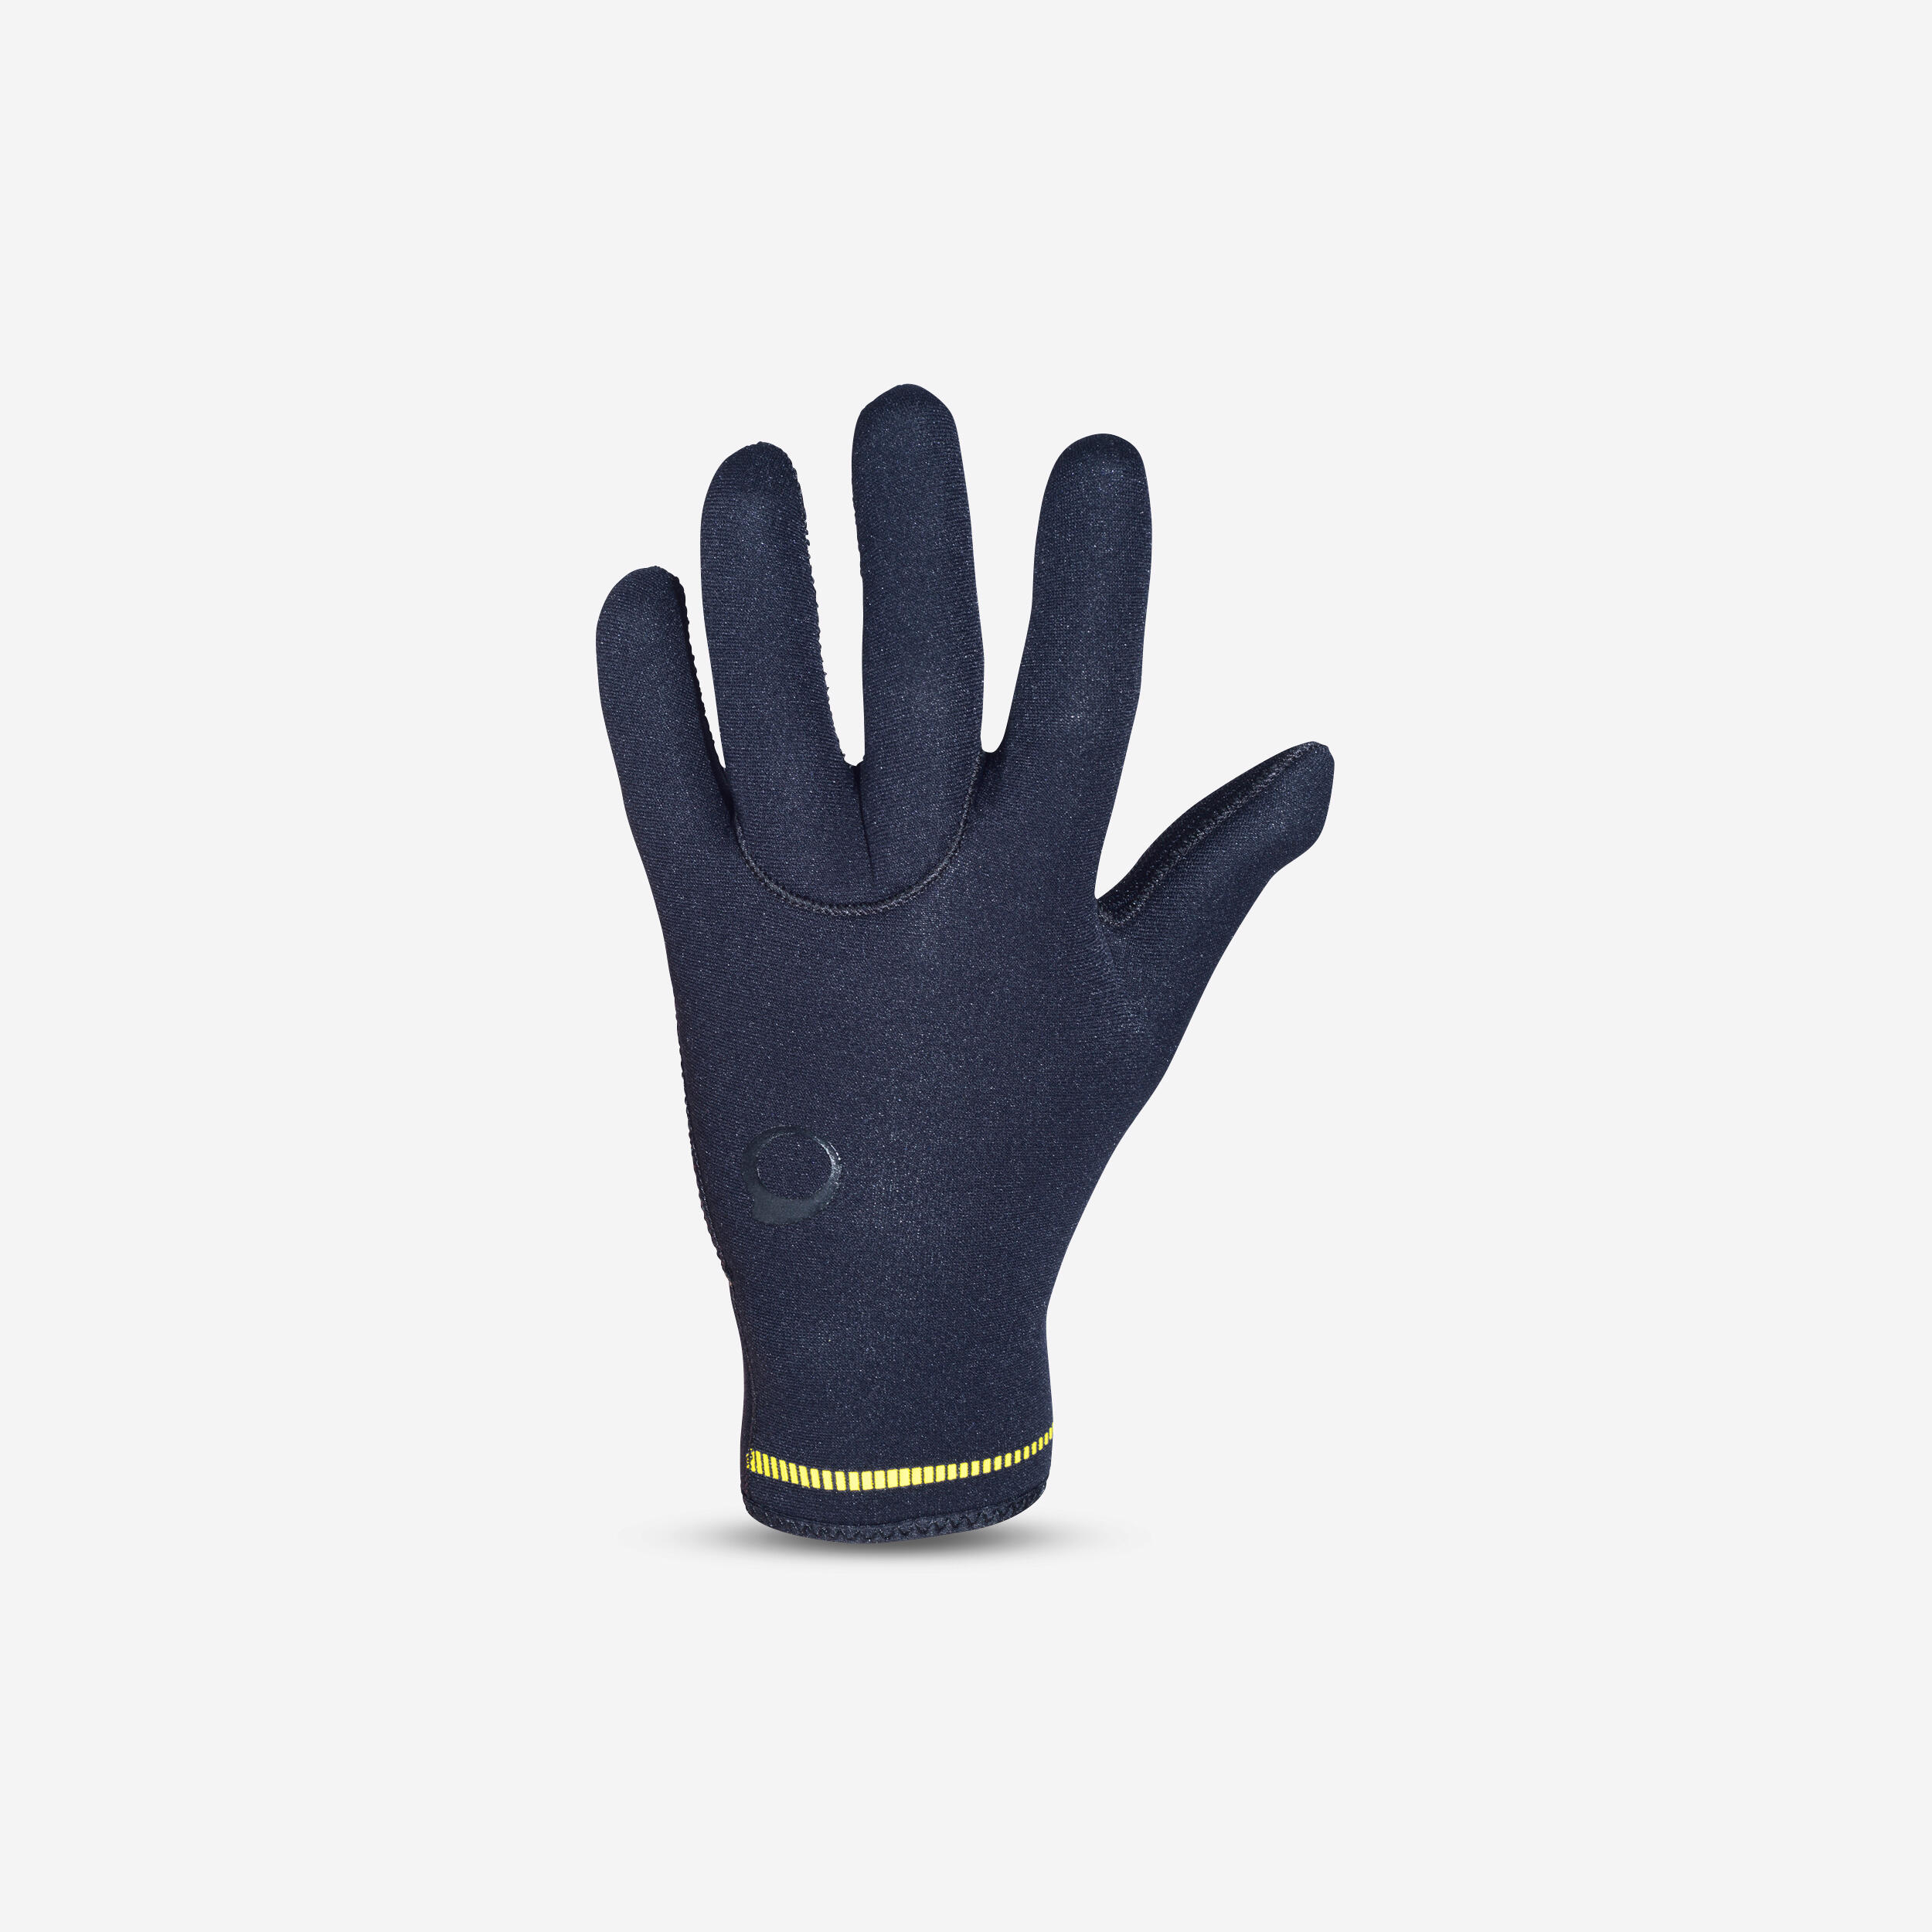 SUBEA Diving gloves 3 mm neoprene black